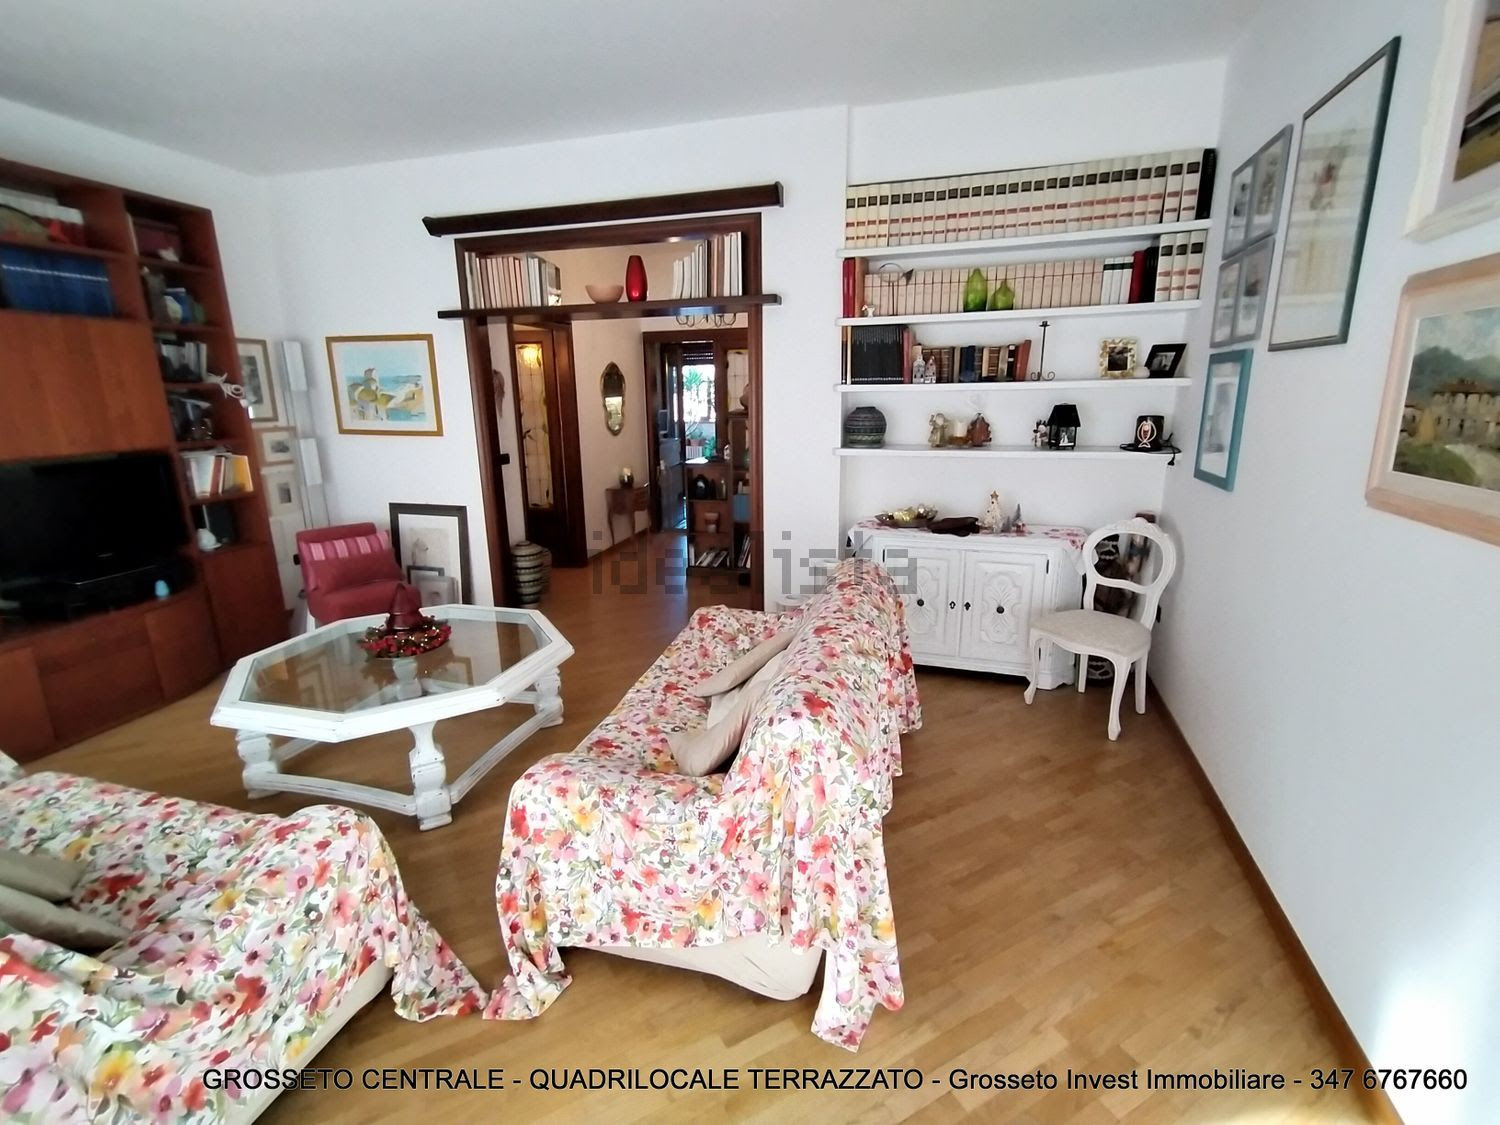 Grosseto Invest di Luigi Ciampi vendita appartamento Sala di Quadrilocale vendita via Depretis, 30, Centro, Grosseto